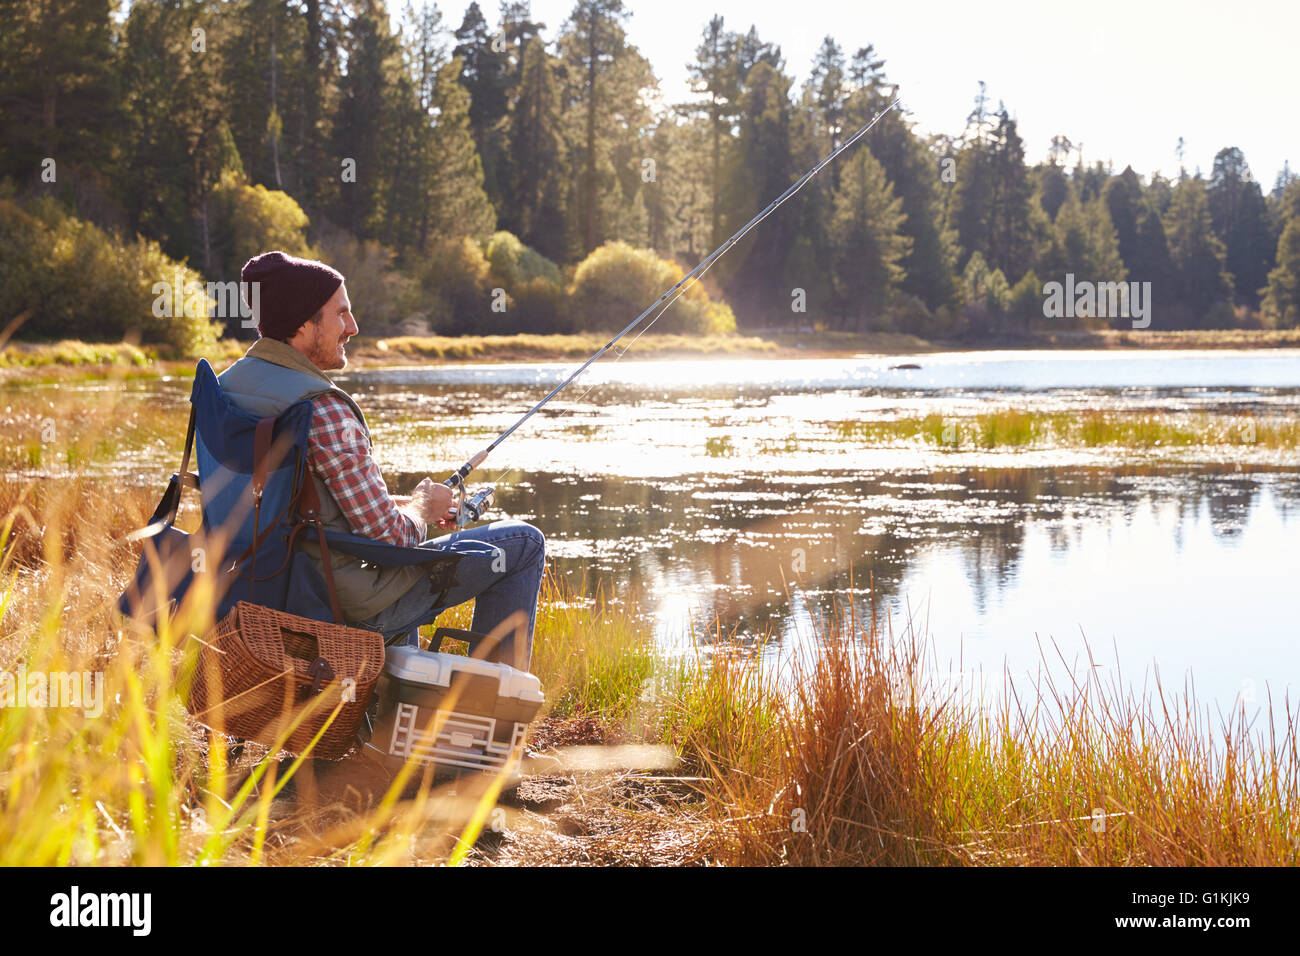 A mediados de la pesca por parte de un hombre adulto, del lago big bear, California, EE.UU. Foto de stock